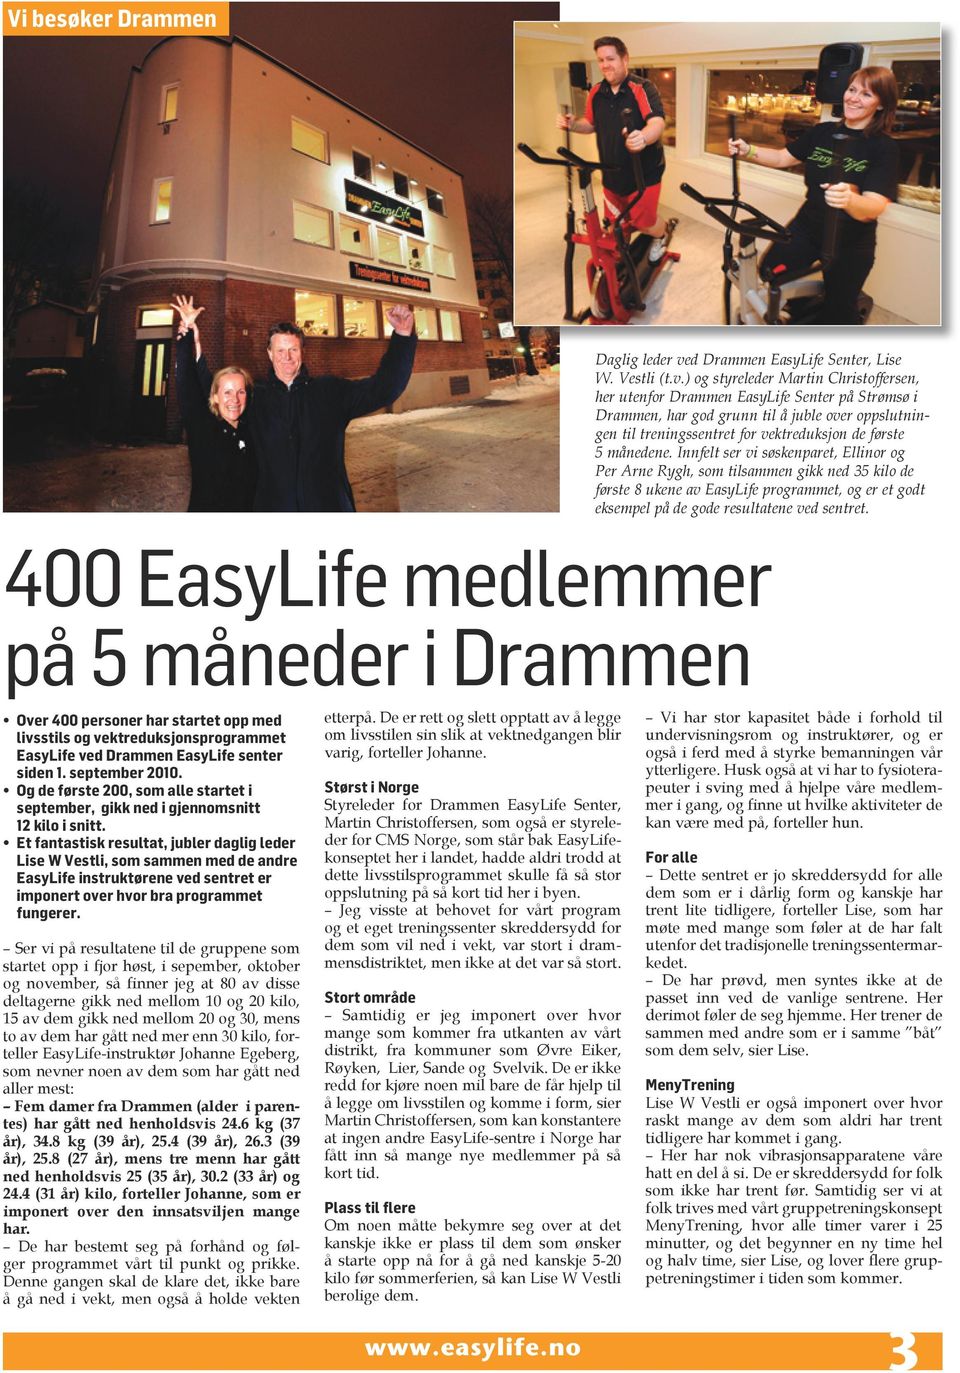 ) og styreleder Martin Christoffersen, her utenfor Drammen EasyLife Senter på Strømsø i Drammen, har god grunn til å juble over oppslutningen til treningssentret for vektreduksjon de første 5